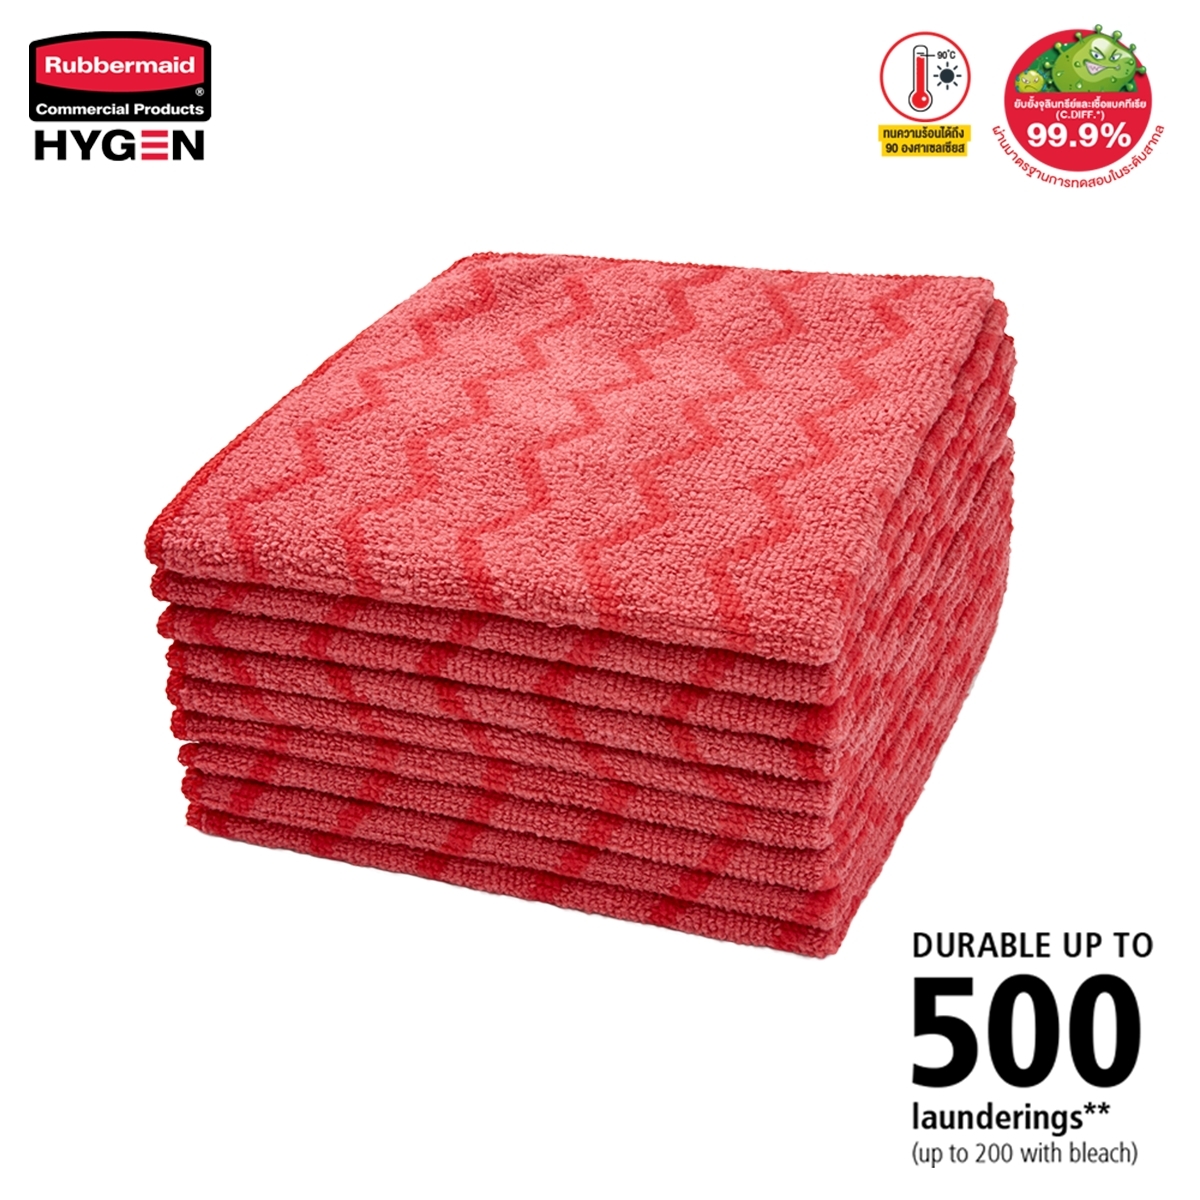 ผ้าไมโครไฟเบอร์ HYGEN™ ขนาด 16 นิ้ว สีแดง แบบซิกแซก เกรดพรีเมี่ยม ซักน้ำร้อน และเข้าเครื่องอบได้ถึง 92°C